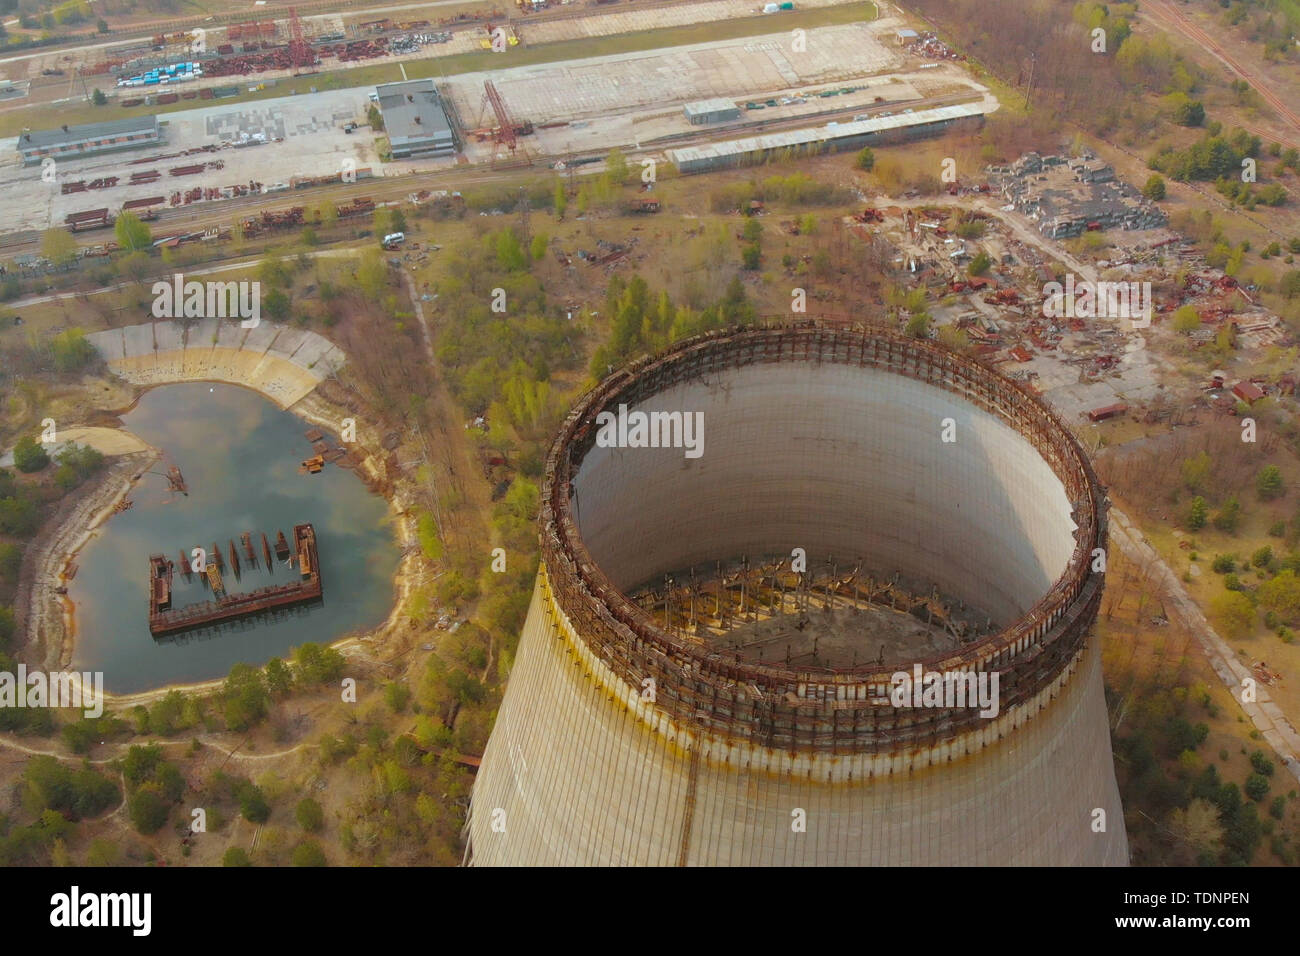 Drone survole près de la tour de refroidissement de la centrale nucléaire de Tchernobyl. Centrale nucléaire de Tchernobyl. Donnant sur la tour de refroidissement de centrale nucléaire en Banque D'Images